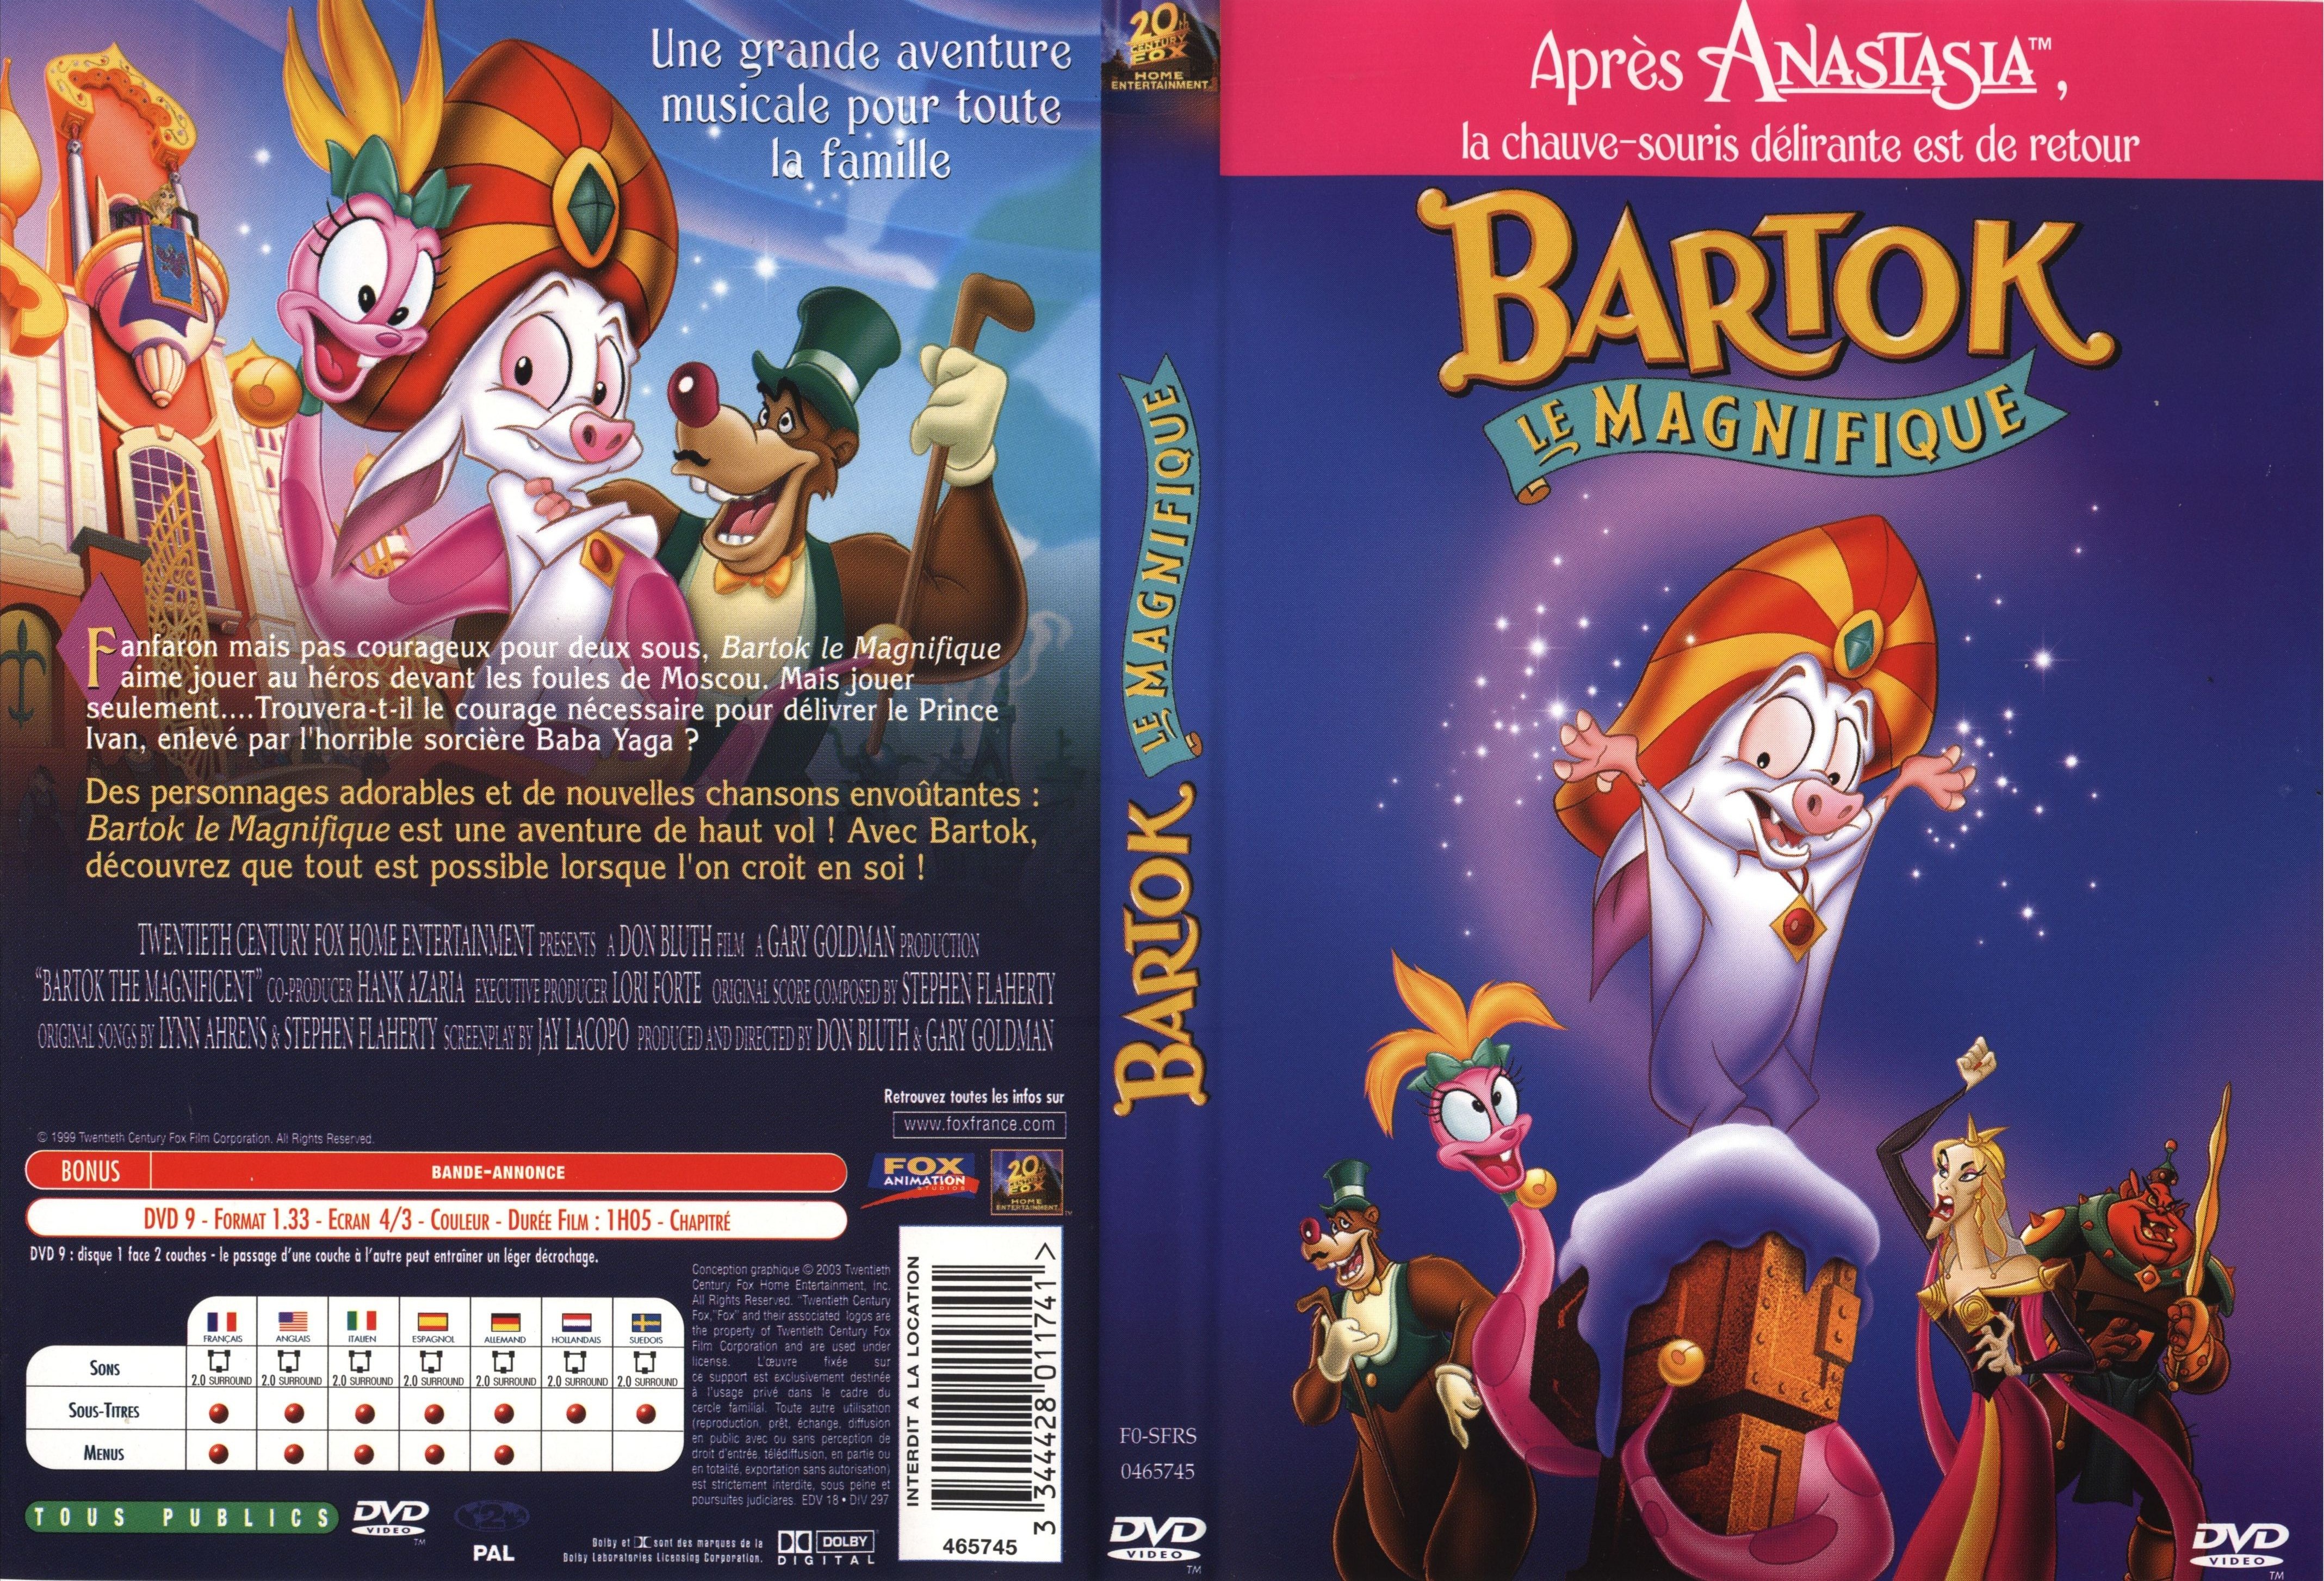 Jaquette DVD Bartok le magnifique